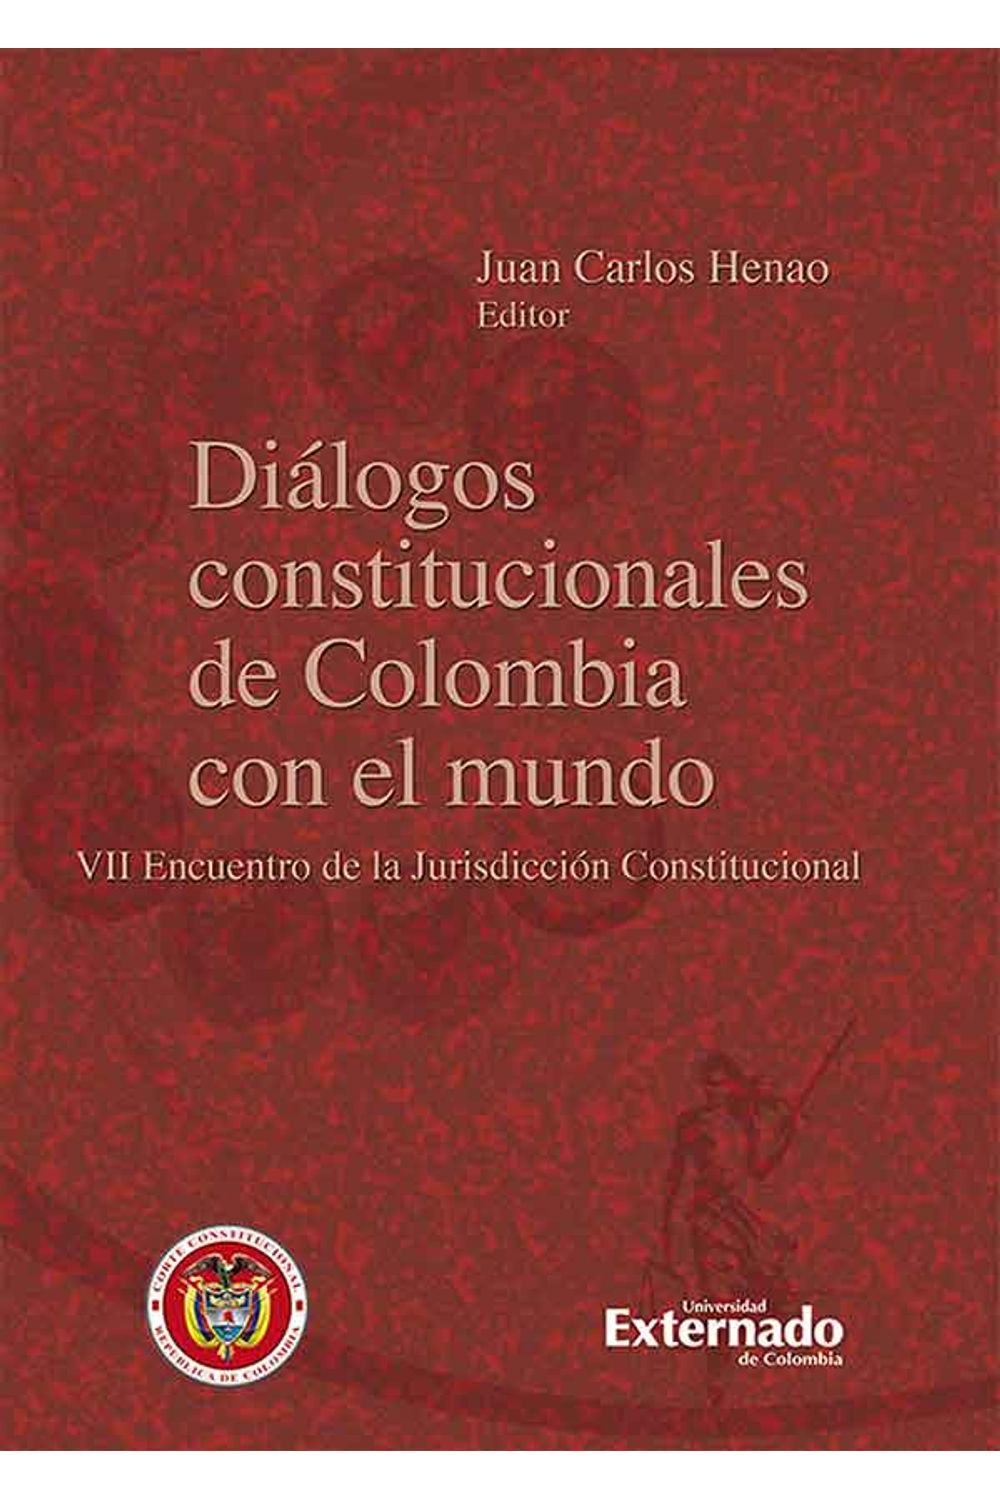 bw-diaacutelogos-constitucionales-de-colombia-con-el-mundo-u-externado-de-colombia-9789587721461